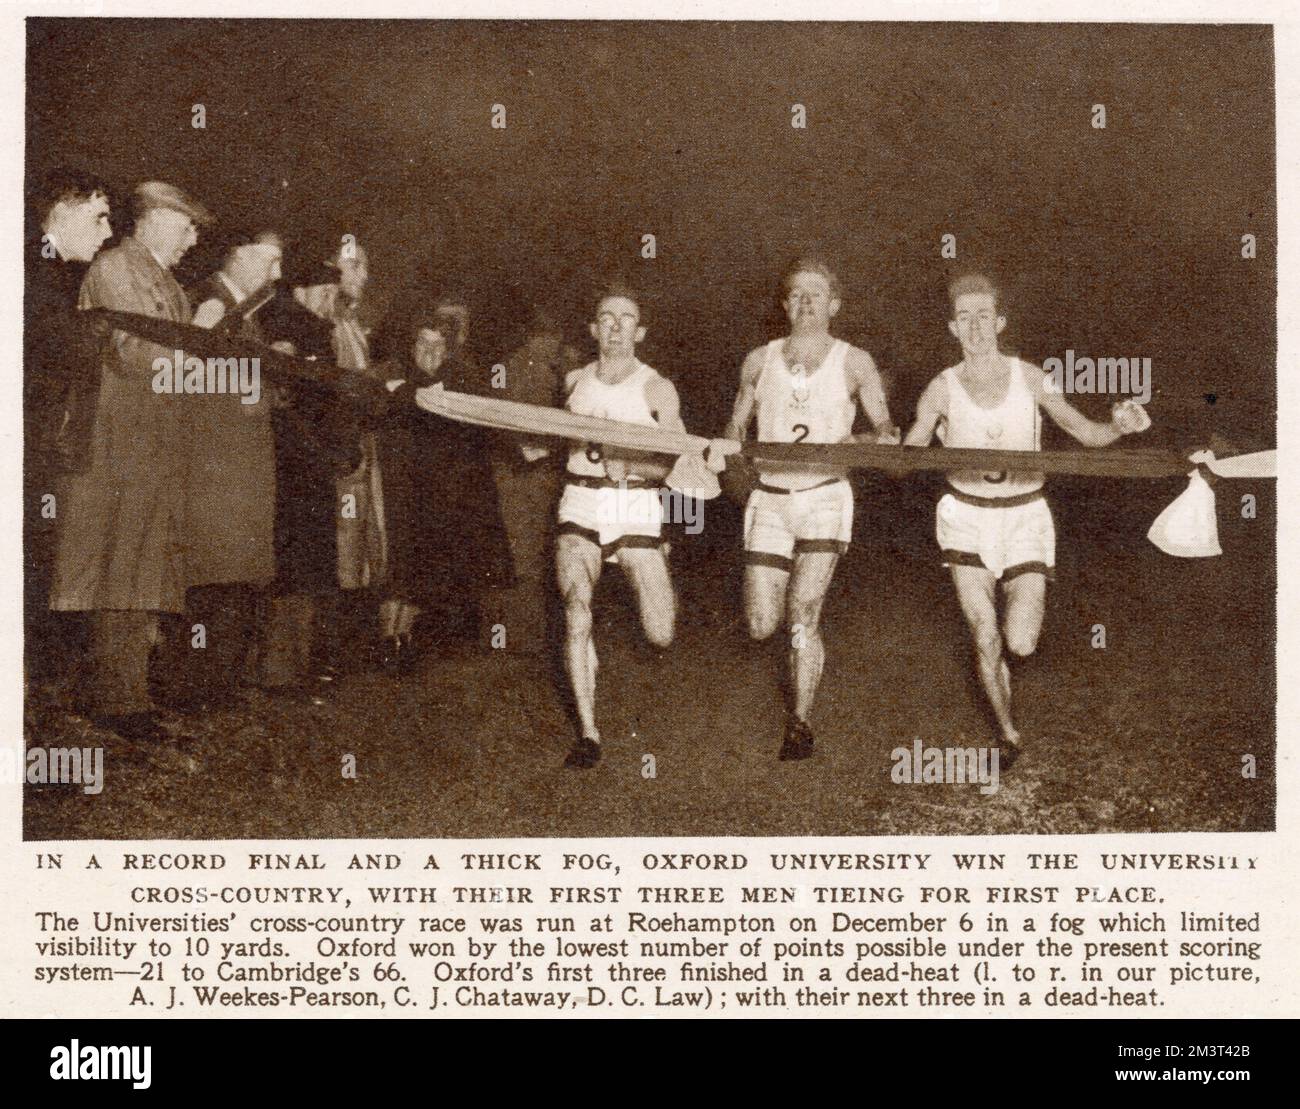 In einem Rekordfinale und einem dicken Nebel gewann die Oxford University Cross-Country mit ihren ersten drei Männern auf dem ersten Platz – A. J. Weekes-Pearson, C. J. Chataway, D. C. Law. Das Rennen fand am 6. Dezember 1952 in Roehampton statt, wobei die Sicht auf 10 Yards begrenzt war. Stockfoto